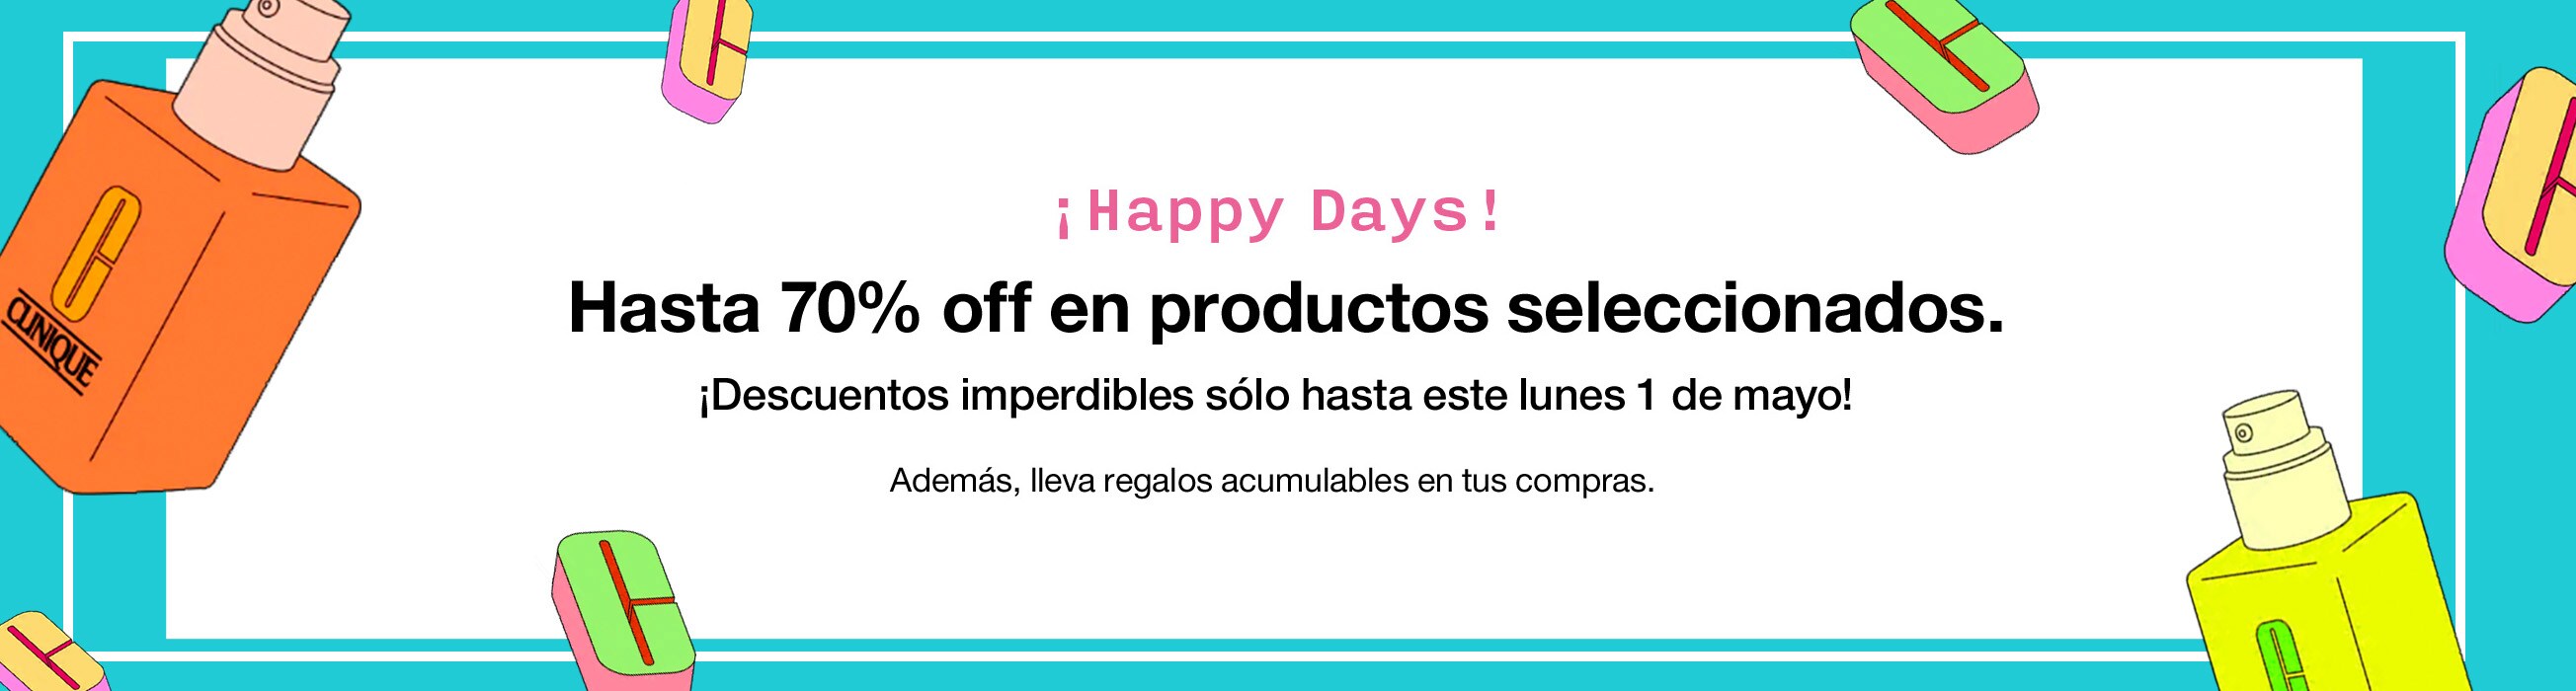 ¡Happy Days! hasta 70% off en productos seleccionados